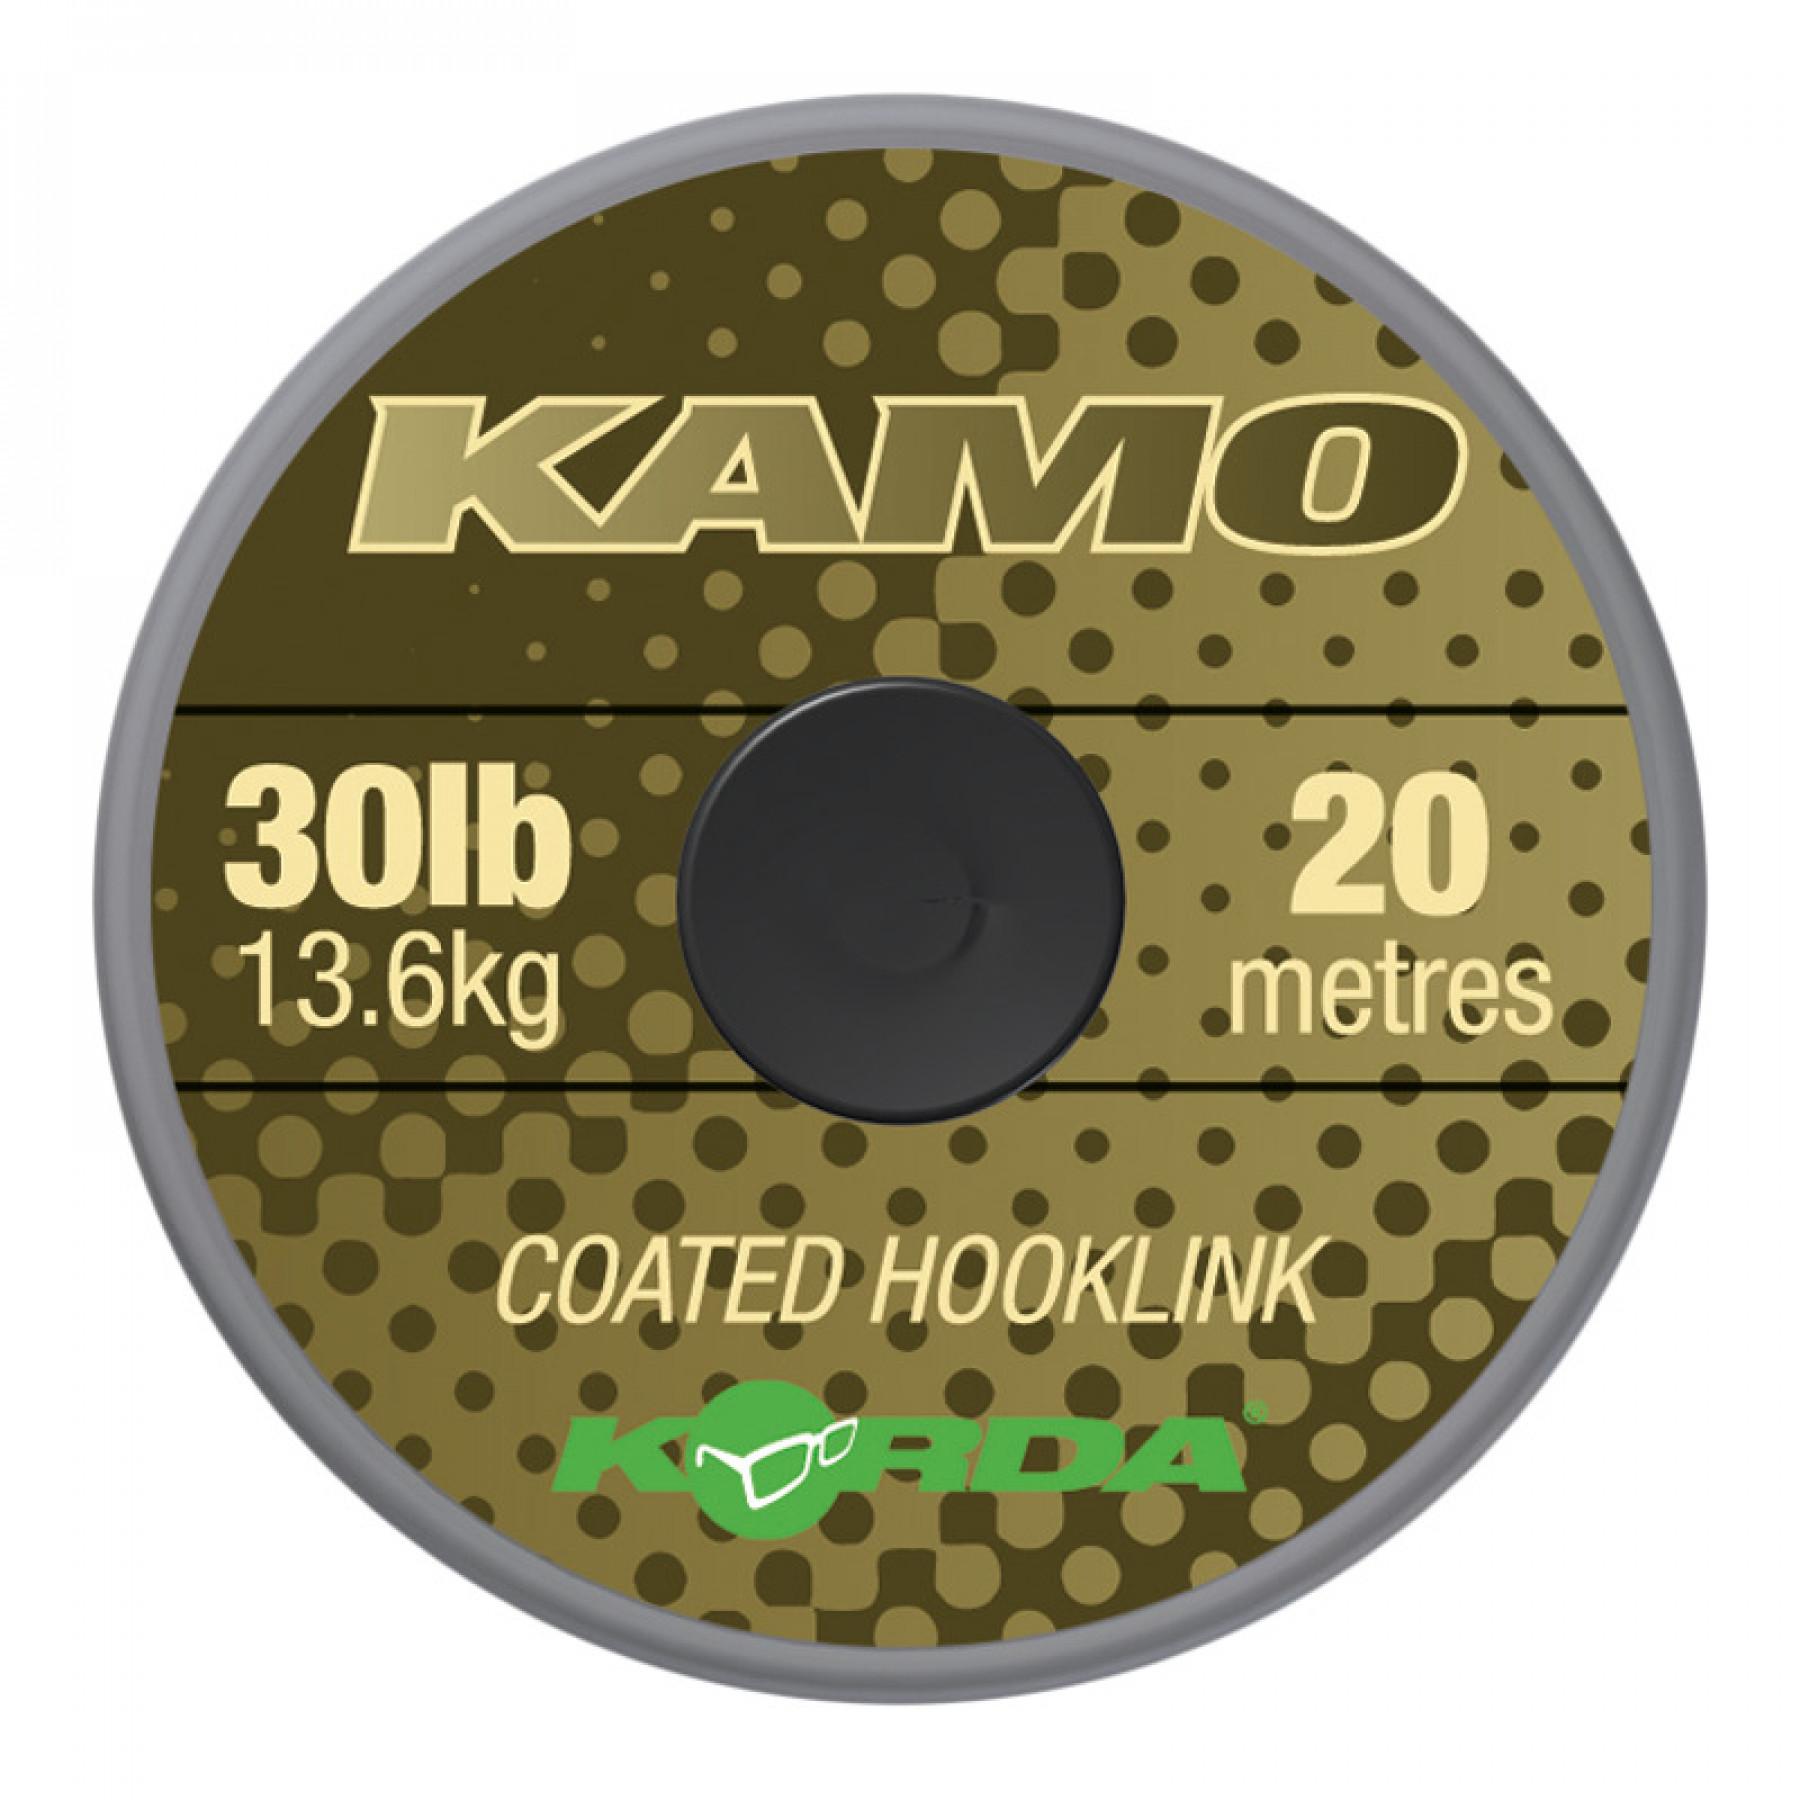 Kamo Korda coated Hooklink 30lb (13.6kg), 20m